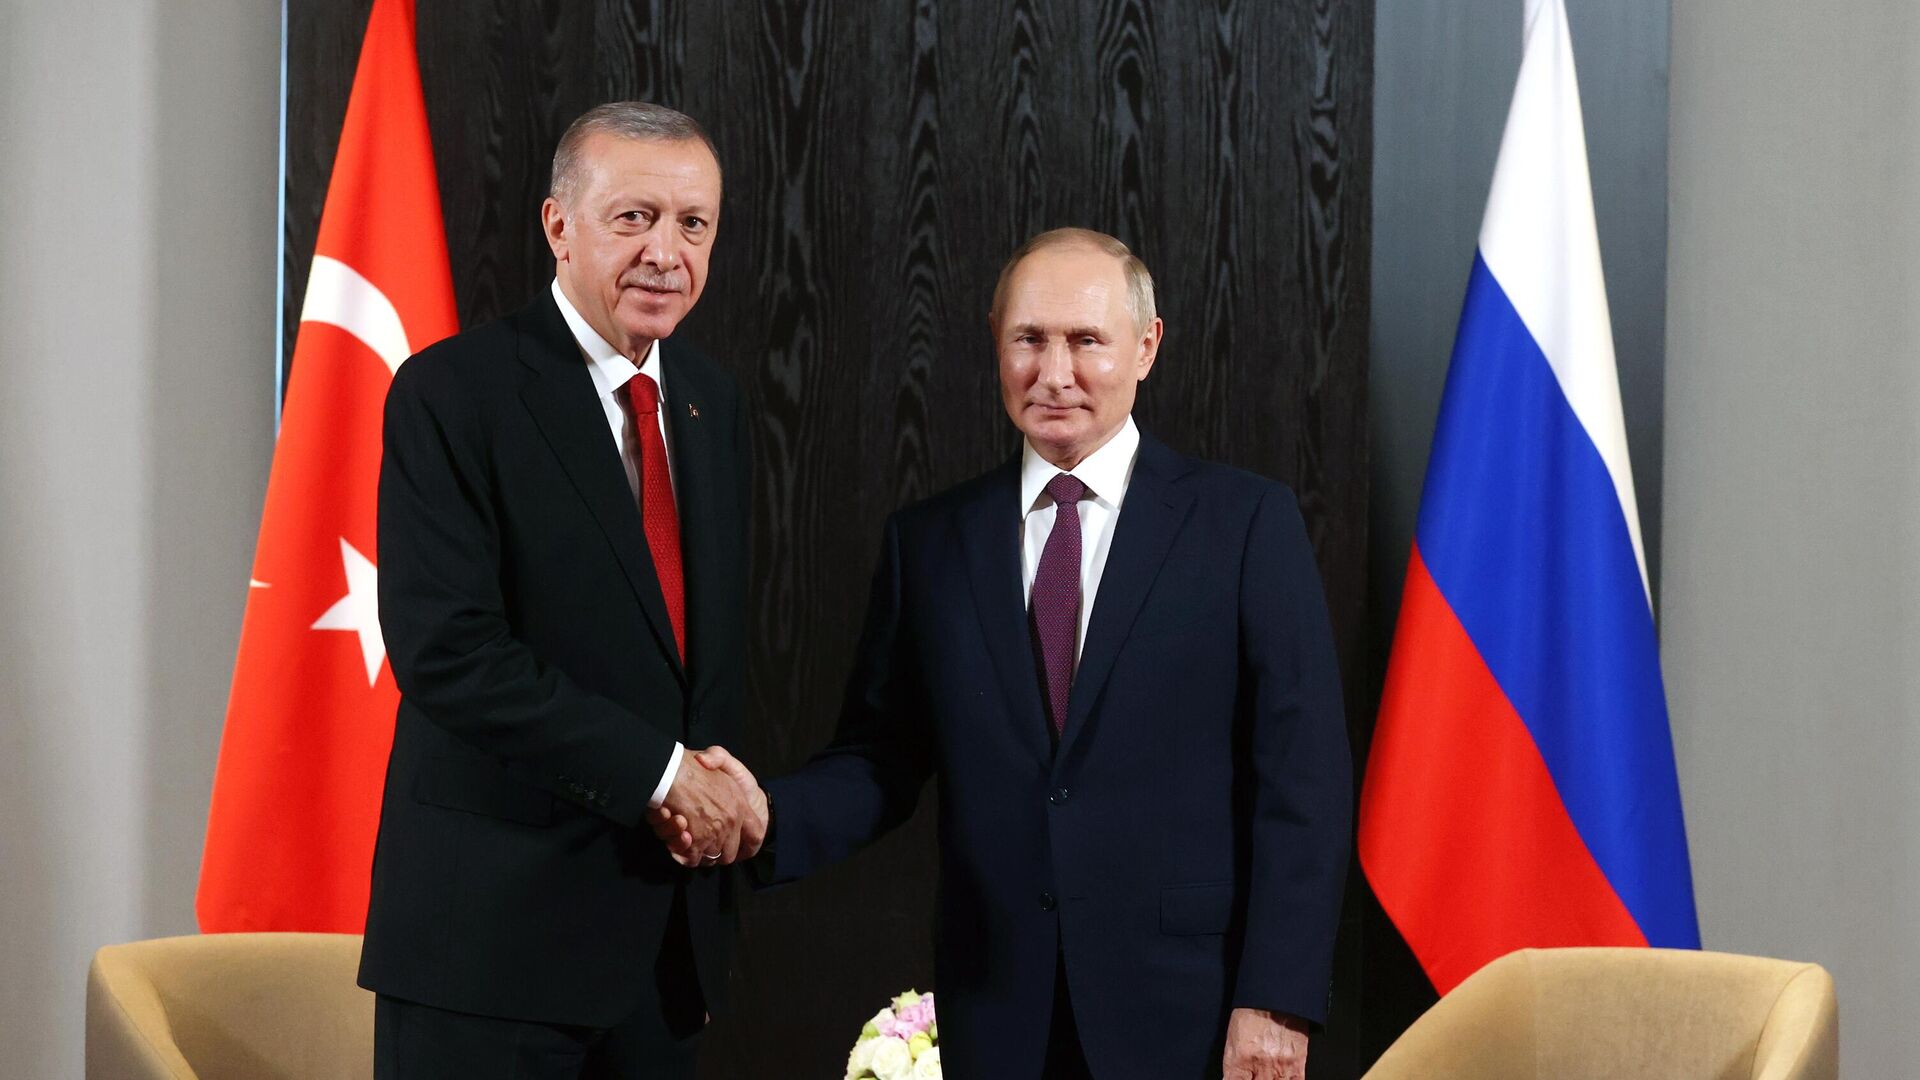 Владимир Путин и Реджеп Тайип Эрдоган во время встречи, фото из архива - Sputnik Азербайджан, 1920, 11.10.2022